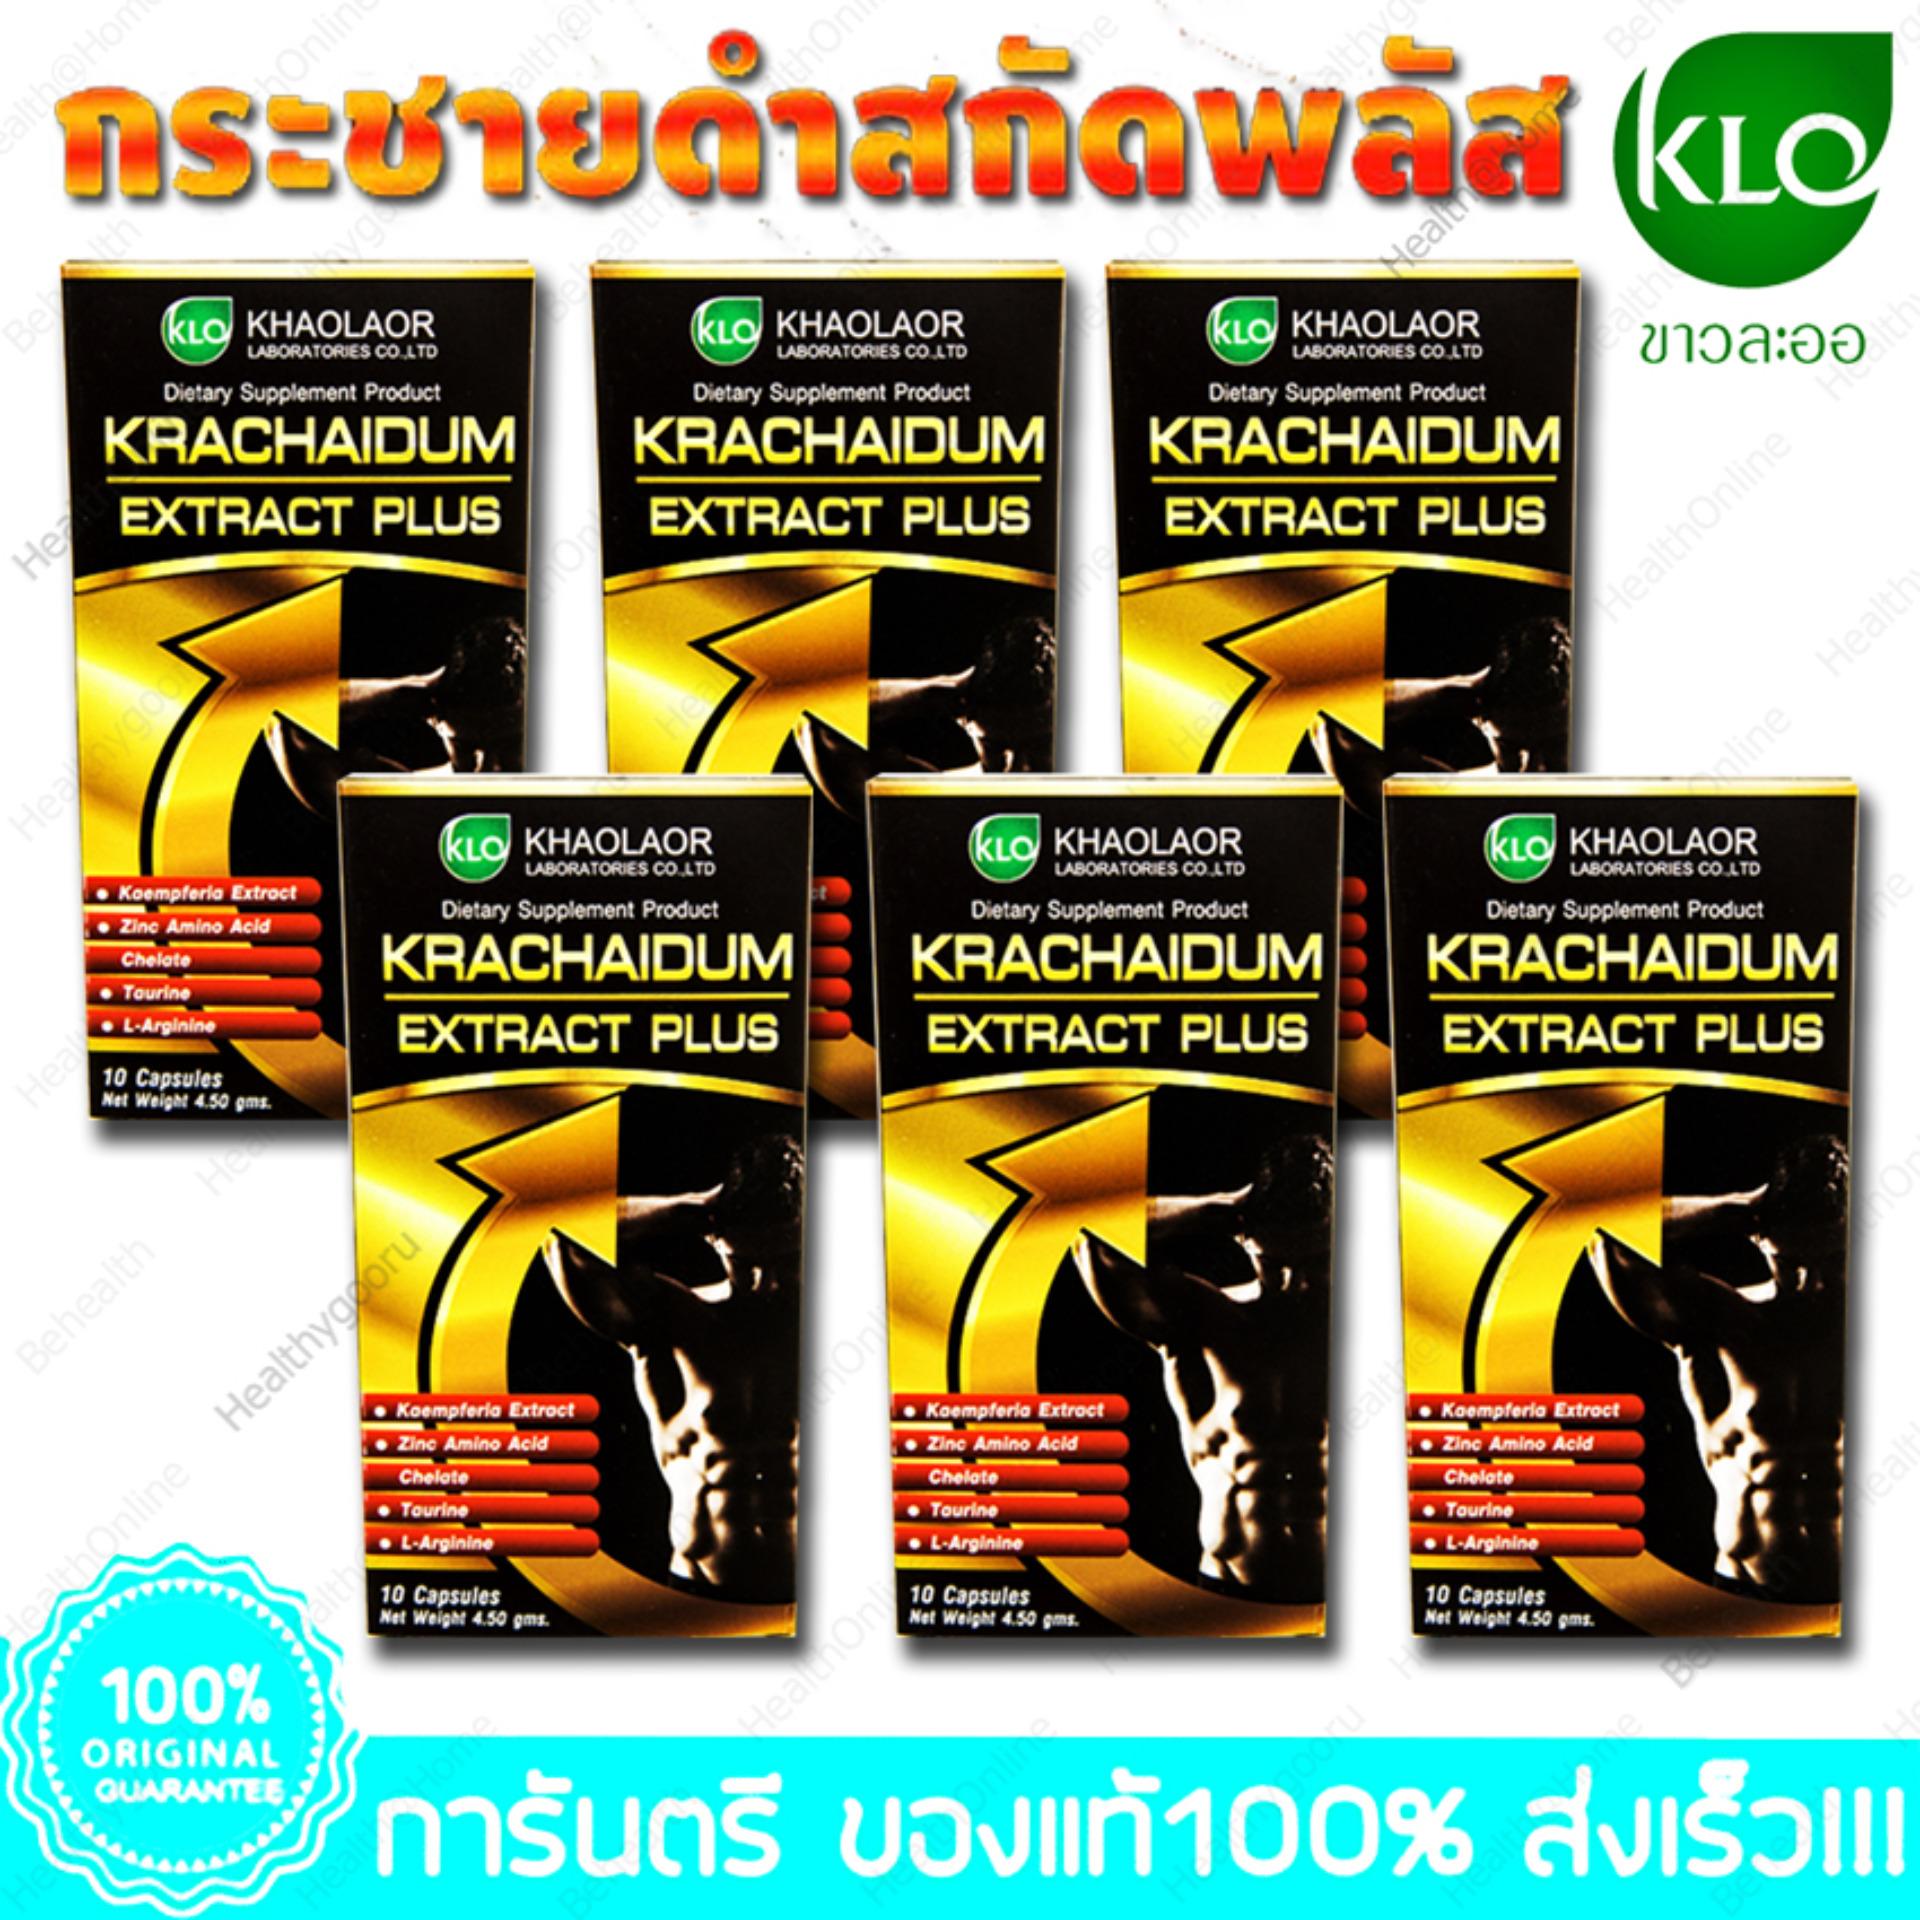 กระชายดำ สกัด พลัส ขาวละออ Krachaidum Extract Plus Khaolaor 10 Capsules. X 6 Box